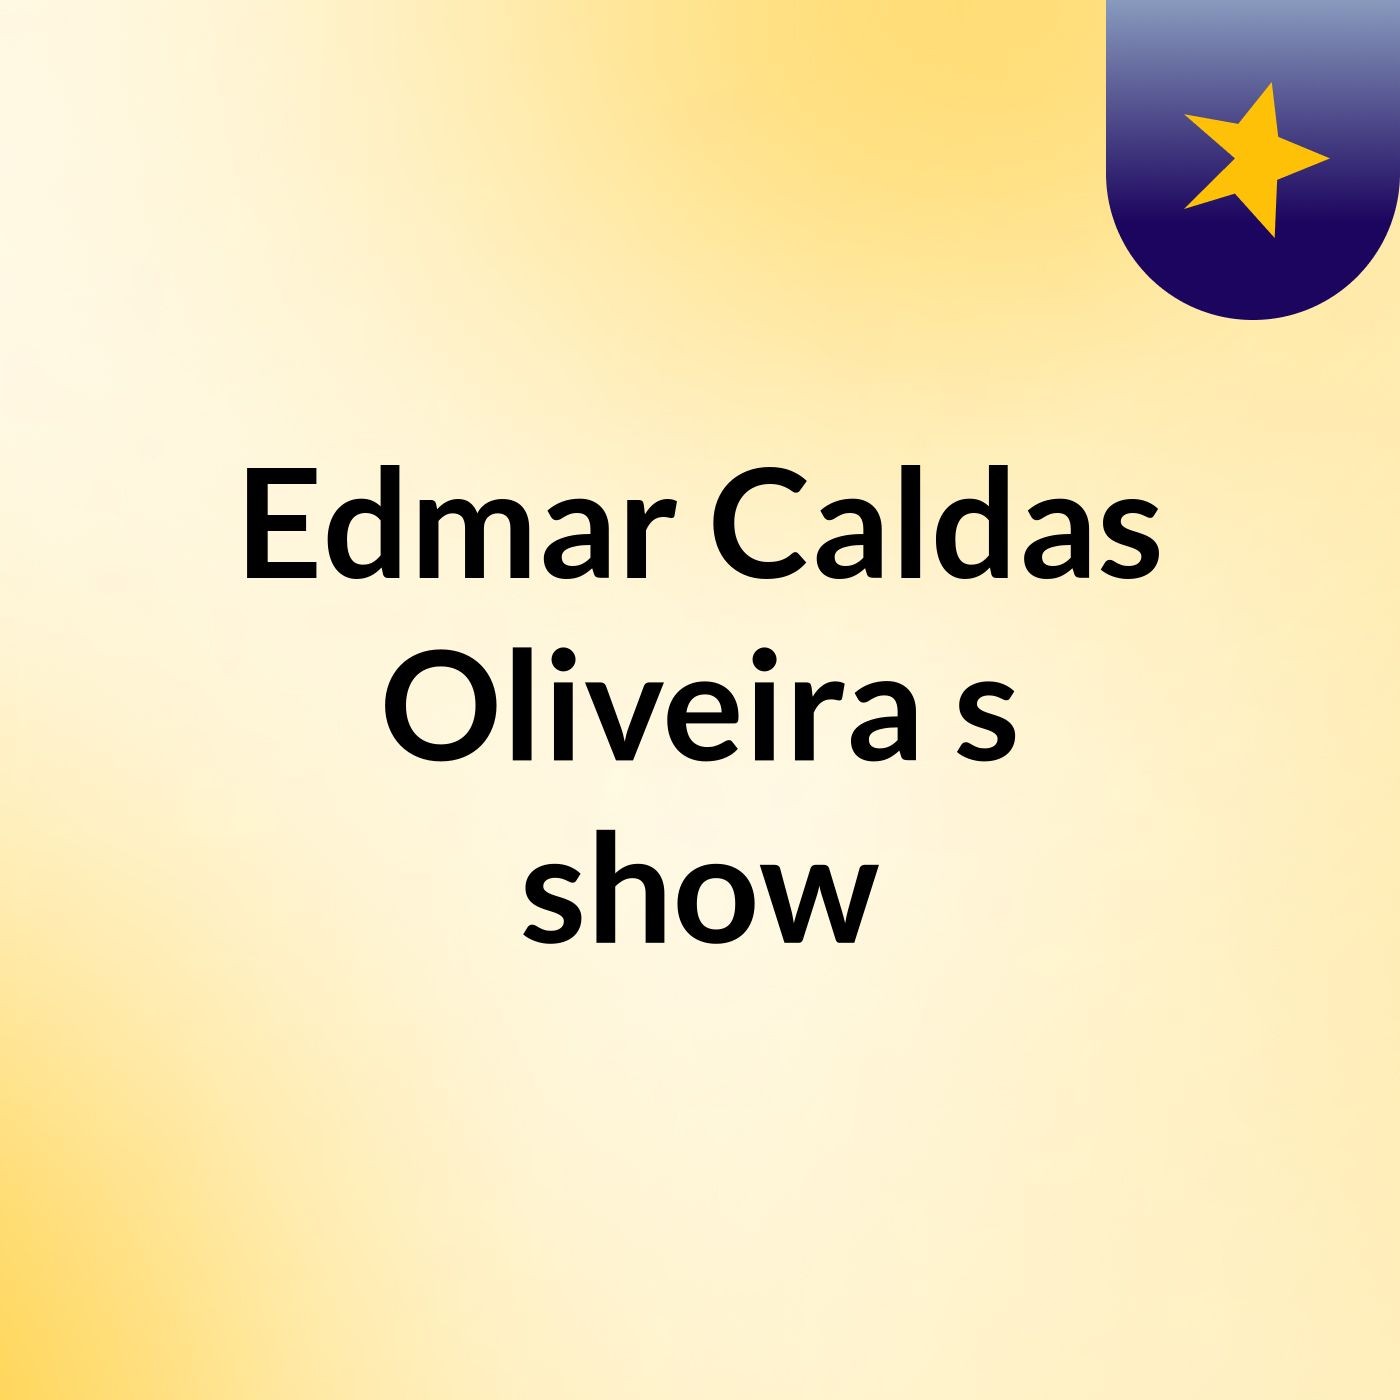 Edmar Caldas Oliveira's show